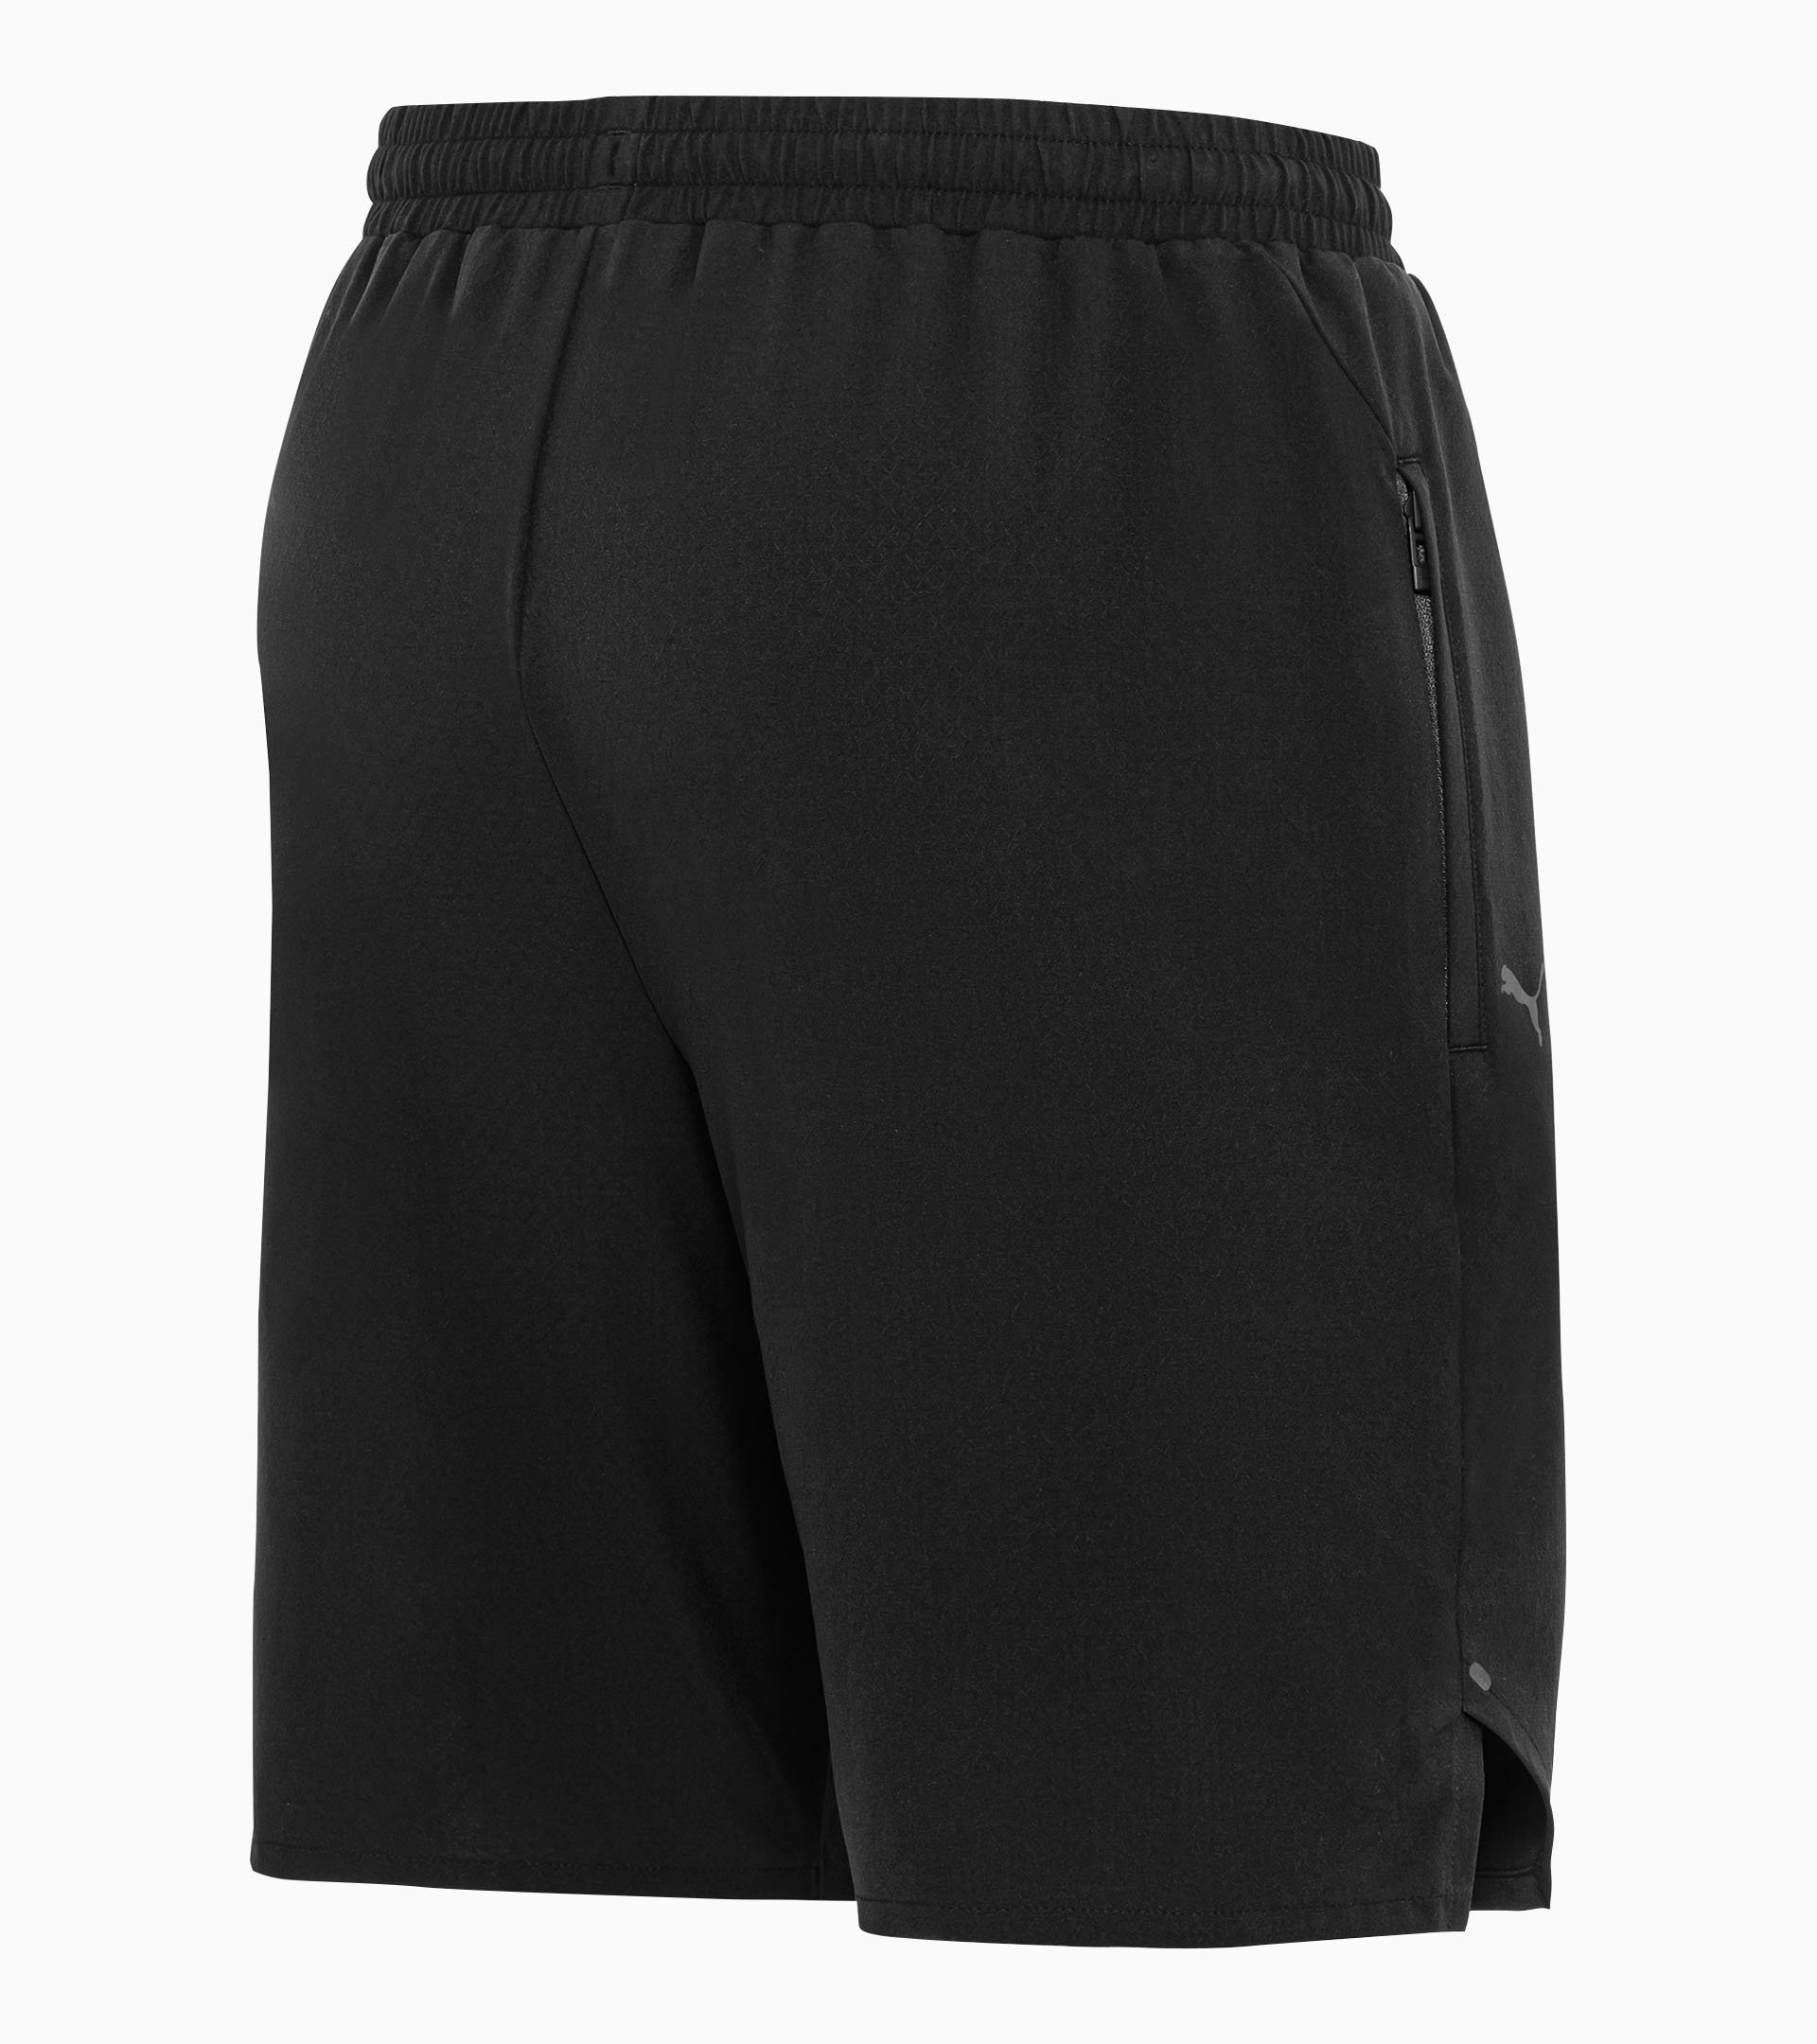 Active Shorts - Exclusive Sports Pants for Men | Porsche Design ...